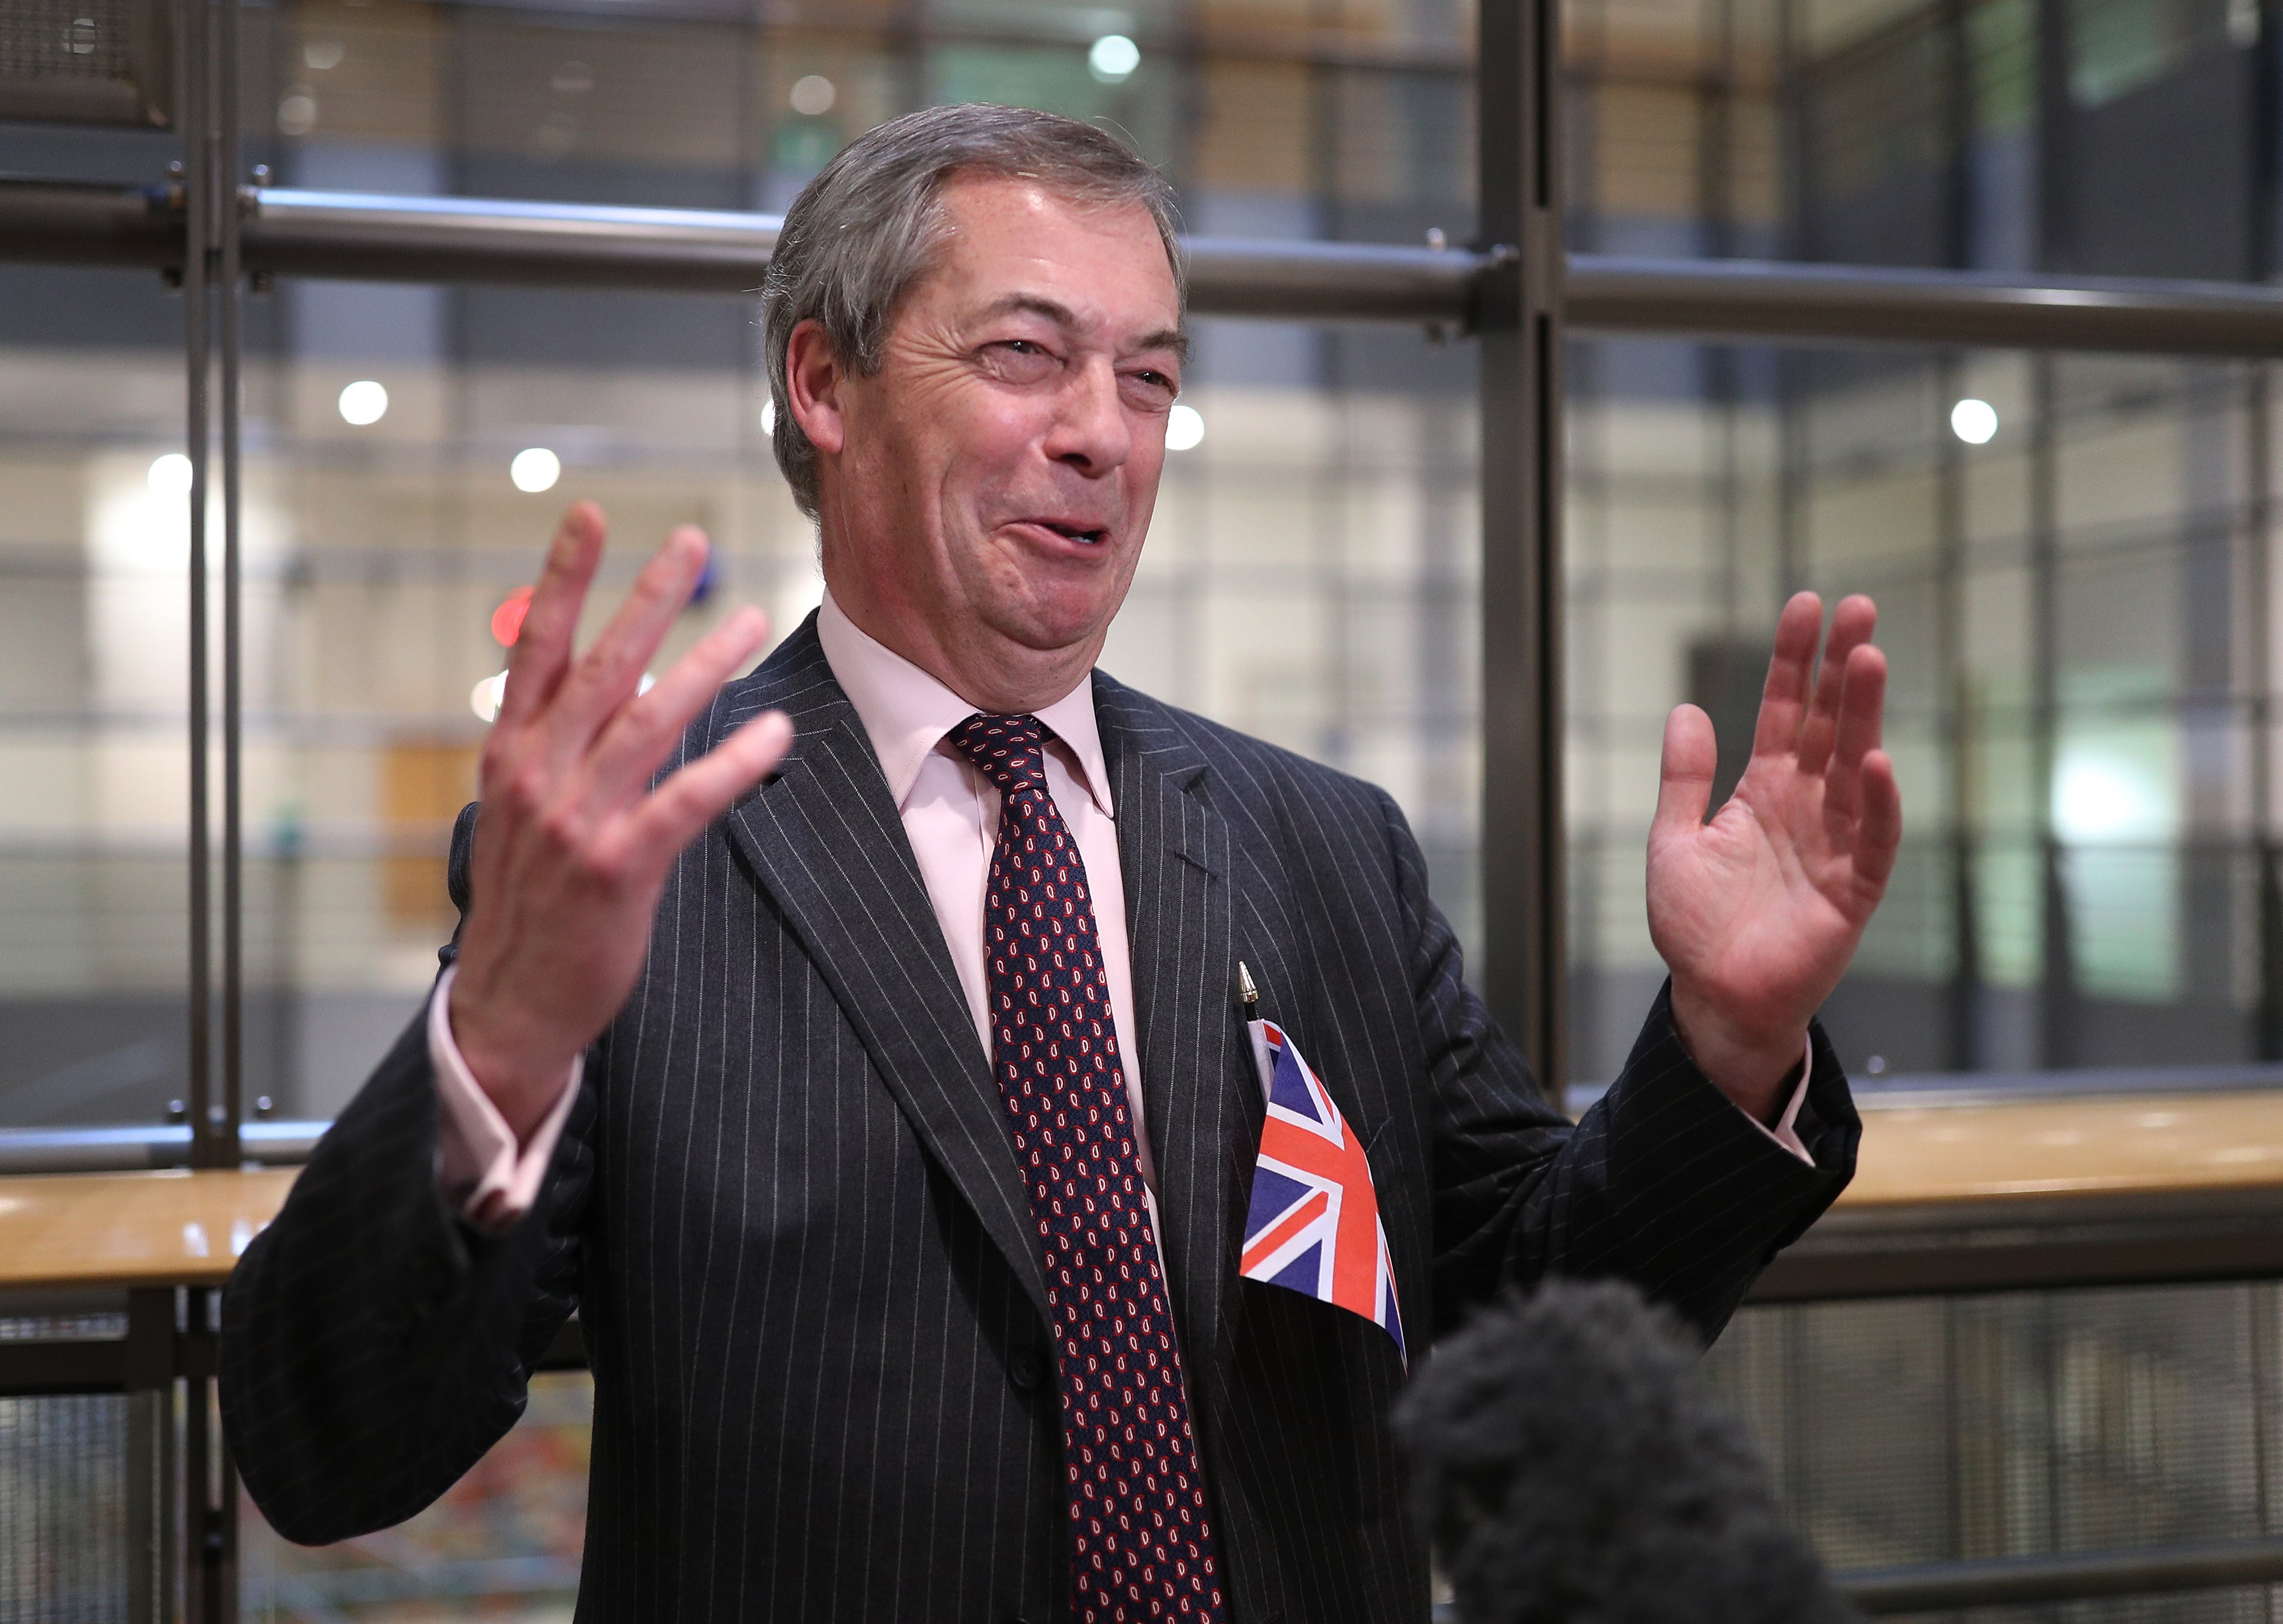 ‘Nigel Farage was a fiercely outspoken foghorn for leaving the EU’